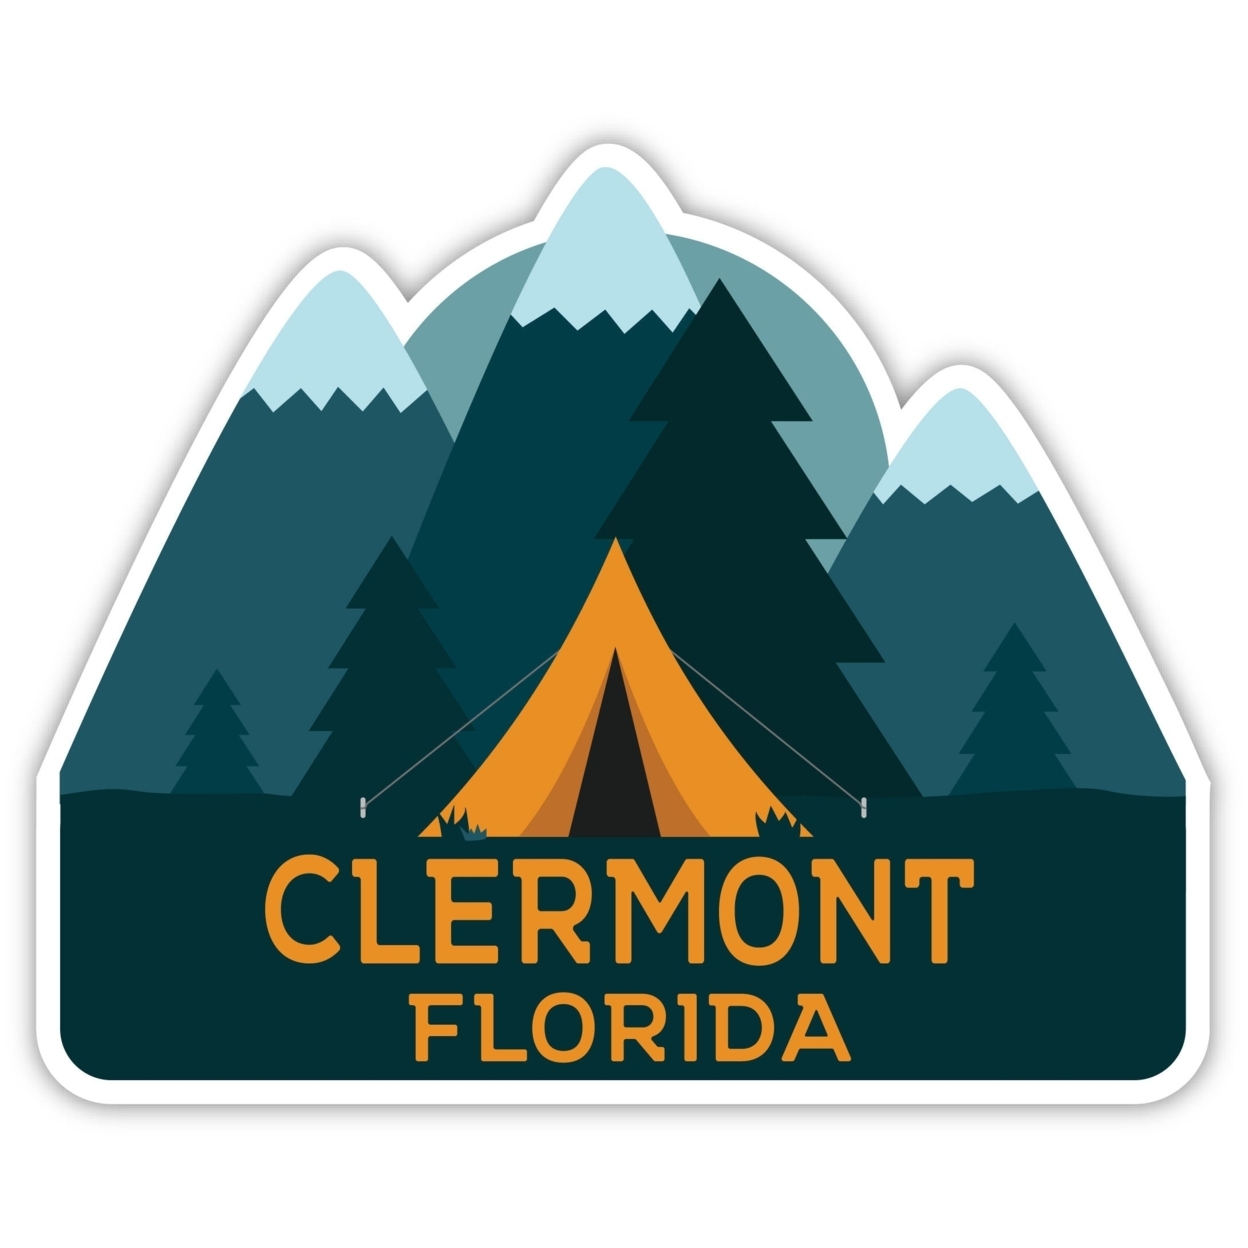 Clermont Florida Souvenir Decorative Stickers (Choose Theme And Size) - Single Unit, 8-Inch, Tent